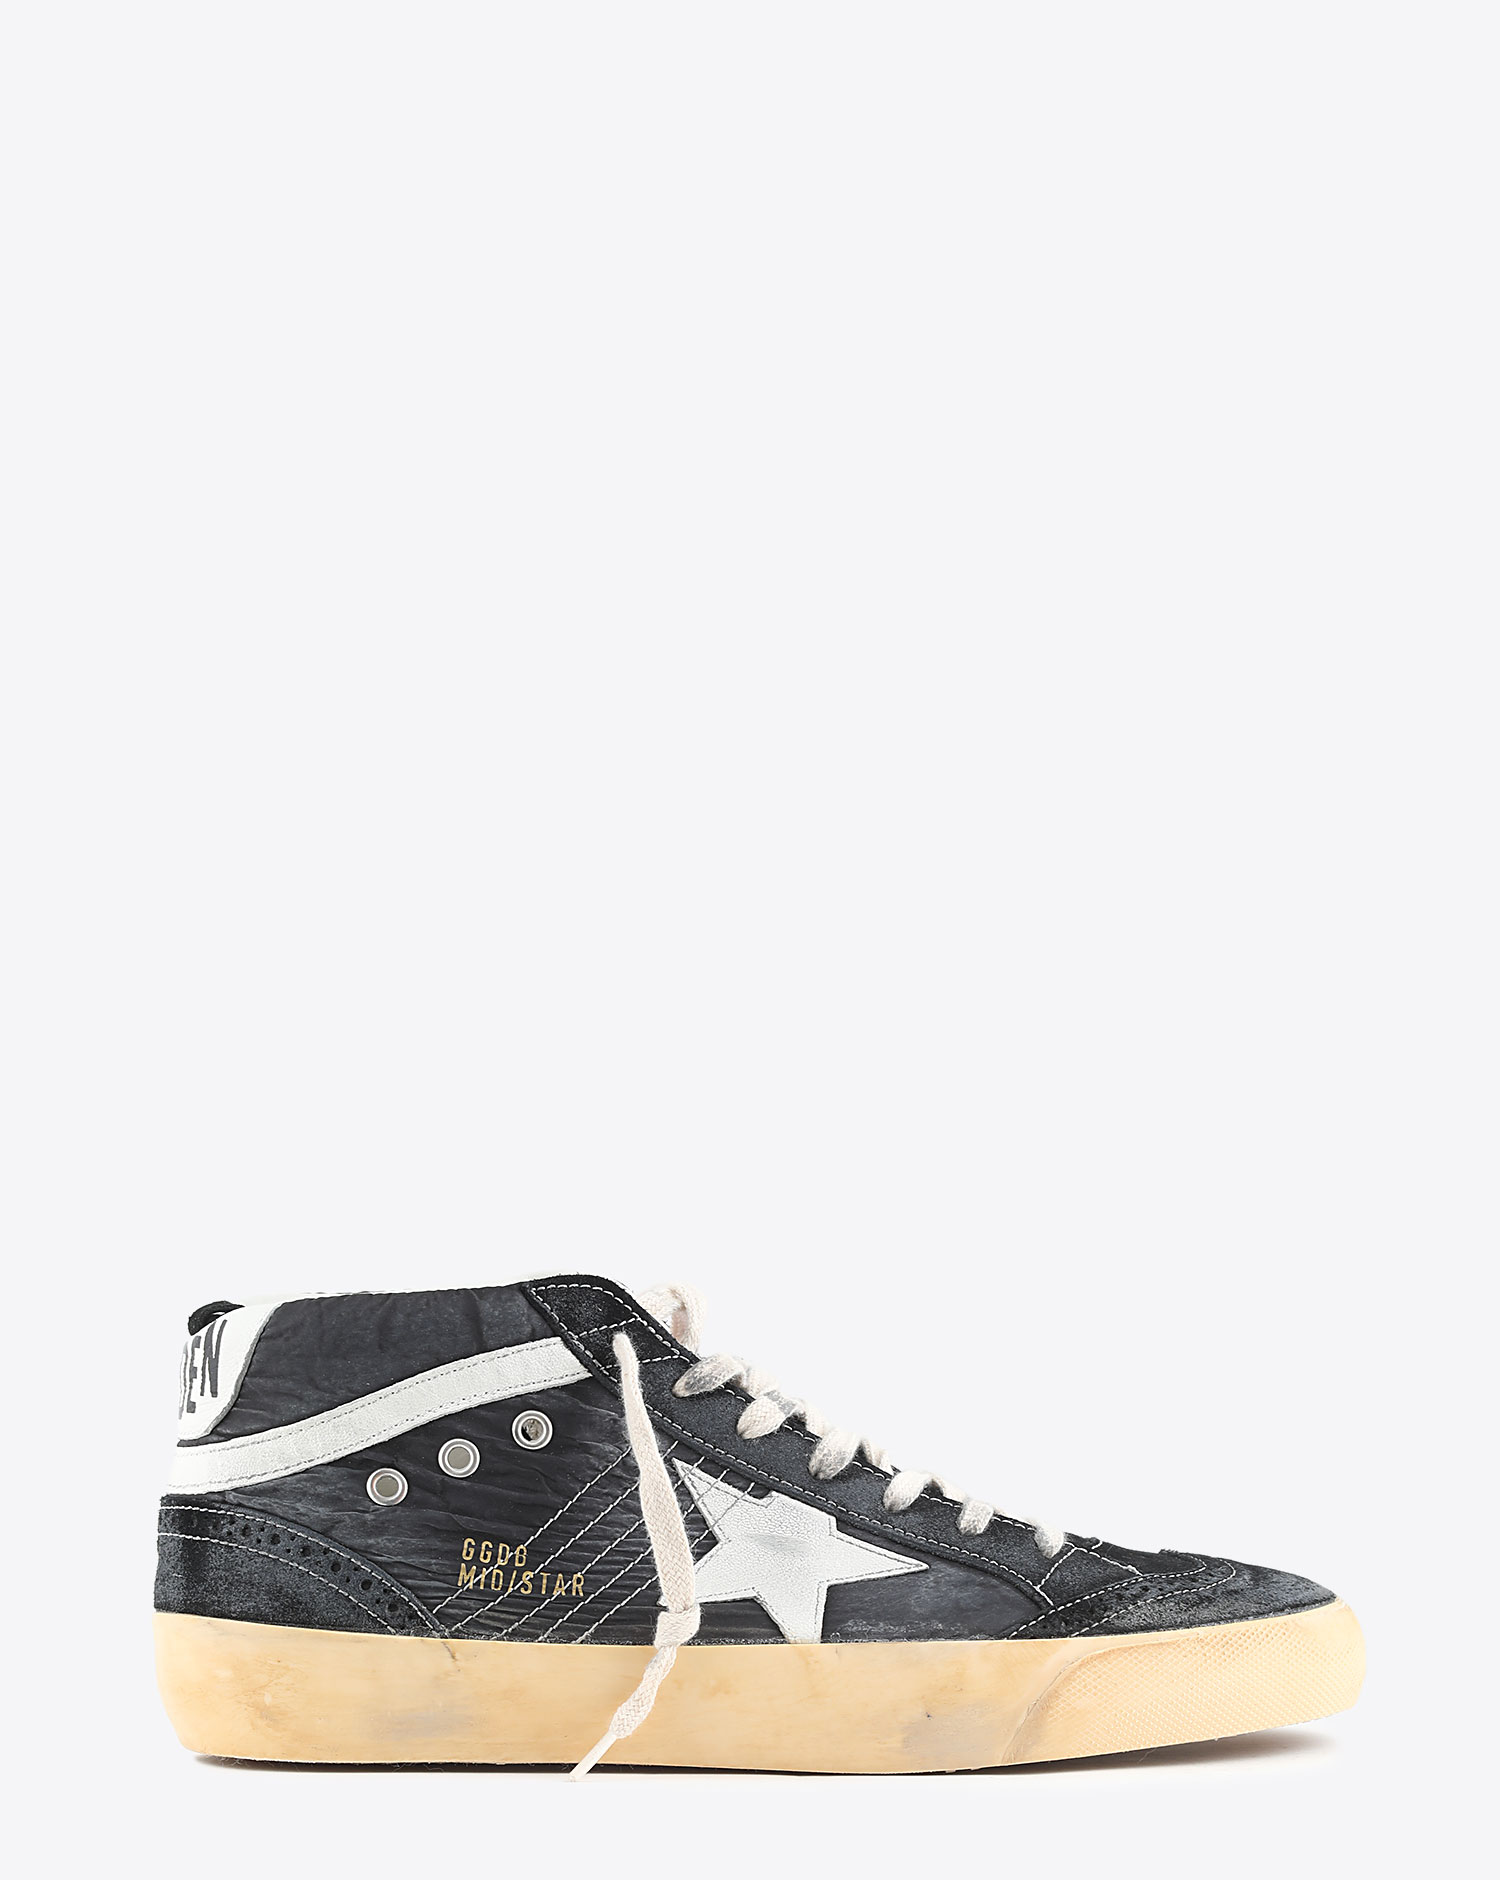 Sneakers Golden Goose Mid Star - Black White 80203